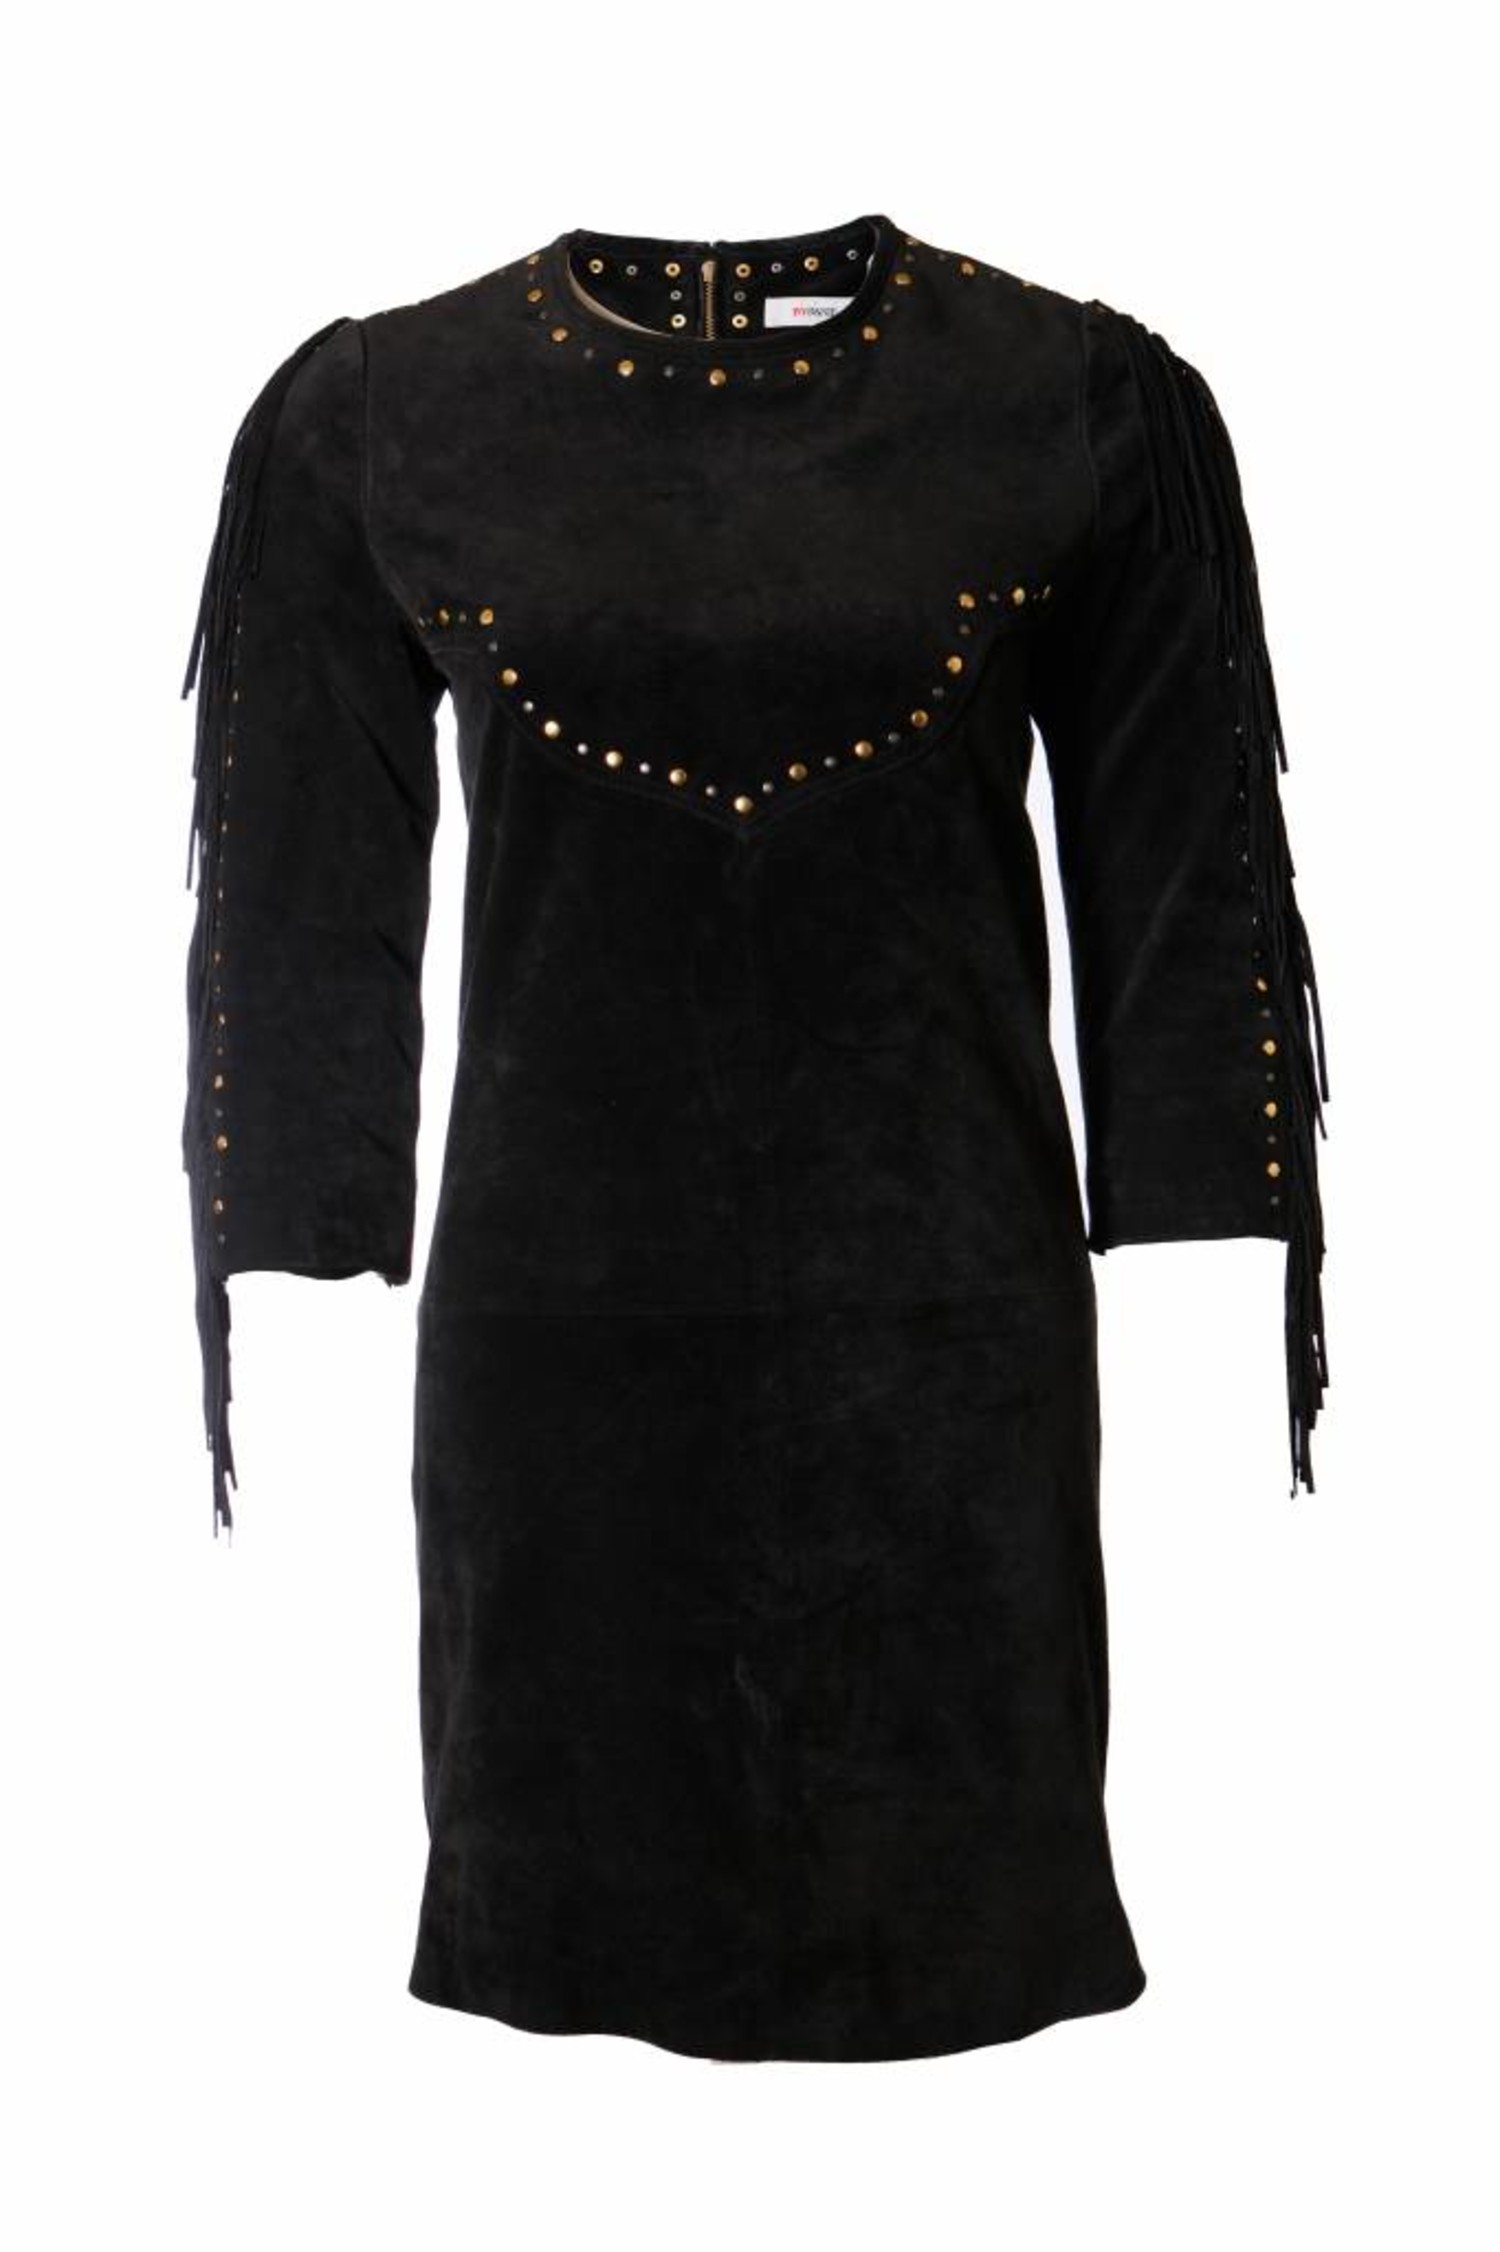 over Janice Toevallig ByDanie, zwart suede jurk met franjes en studs in maat S. - Unique Designer  Pieces